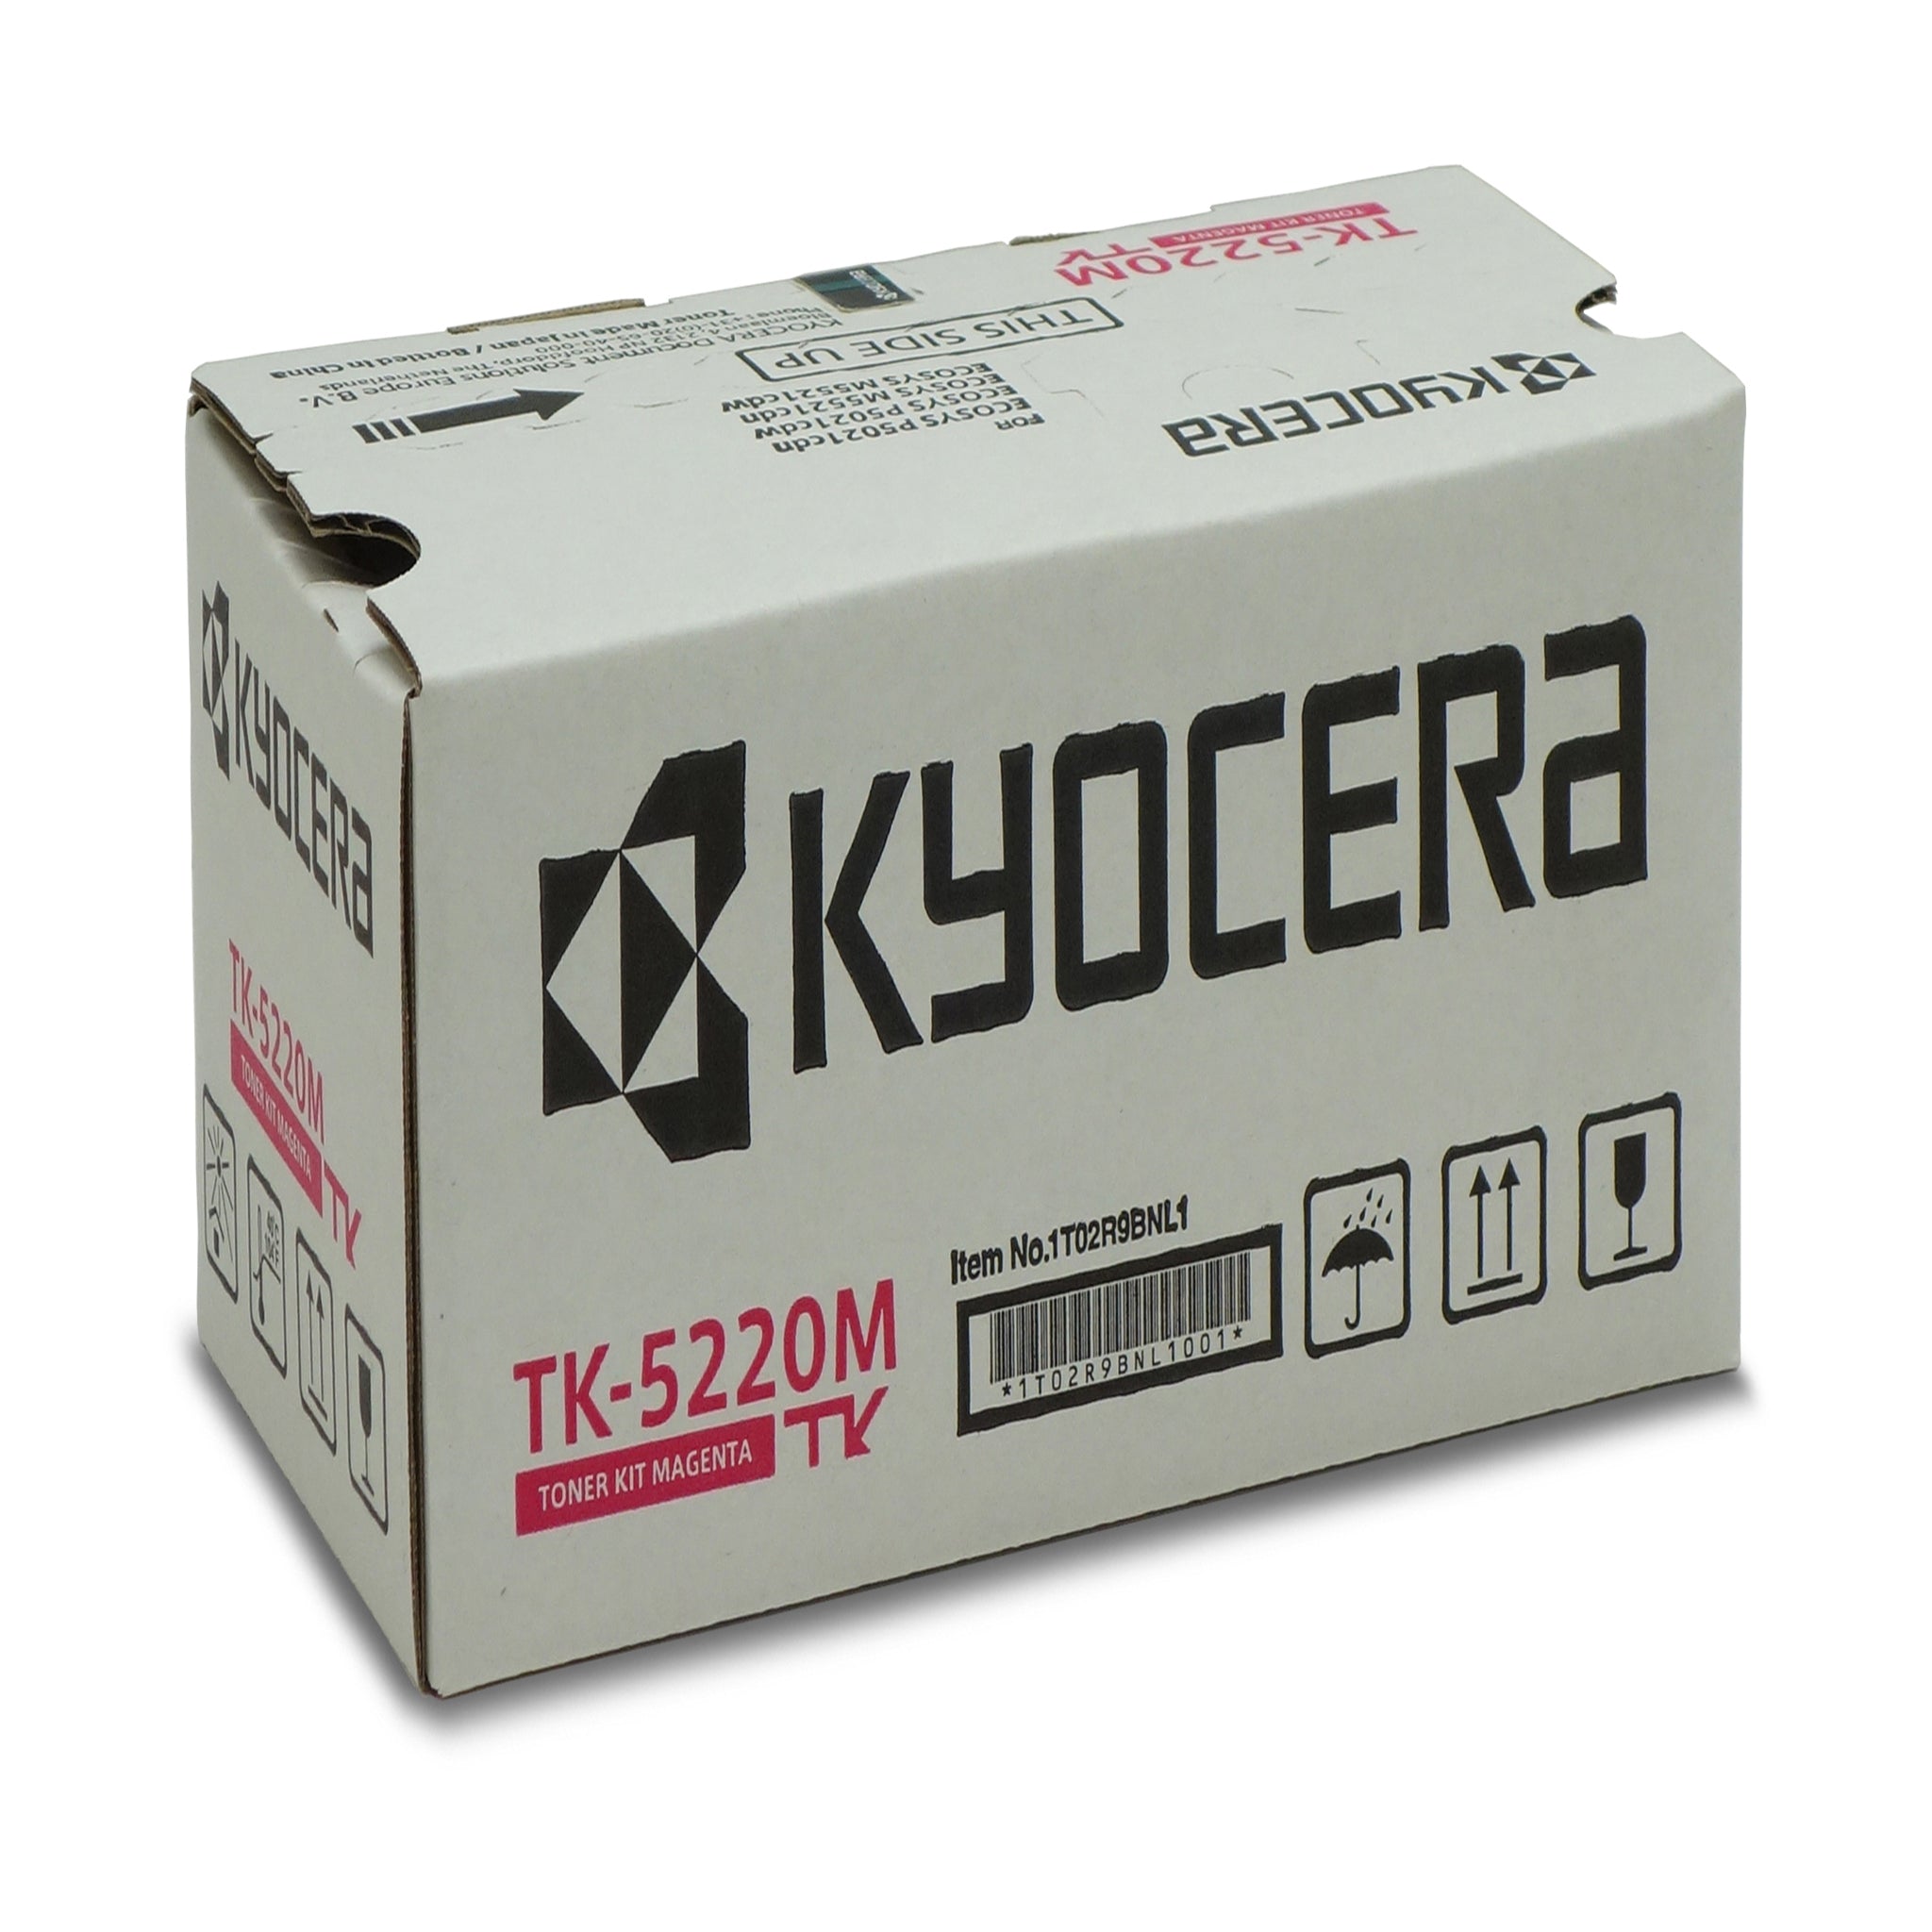 Cartuccia toner originale per Kyocera TK-5220